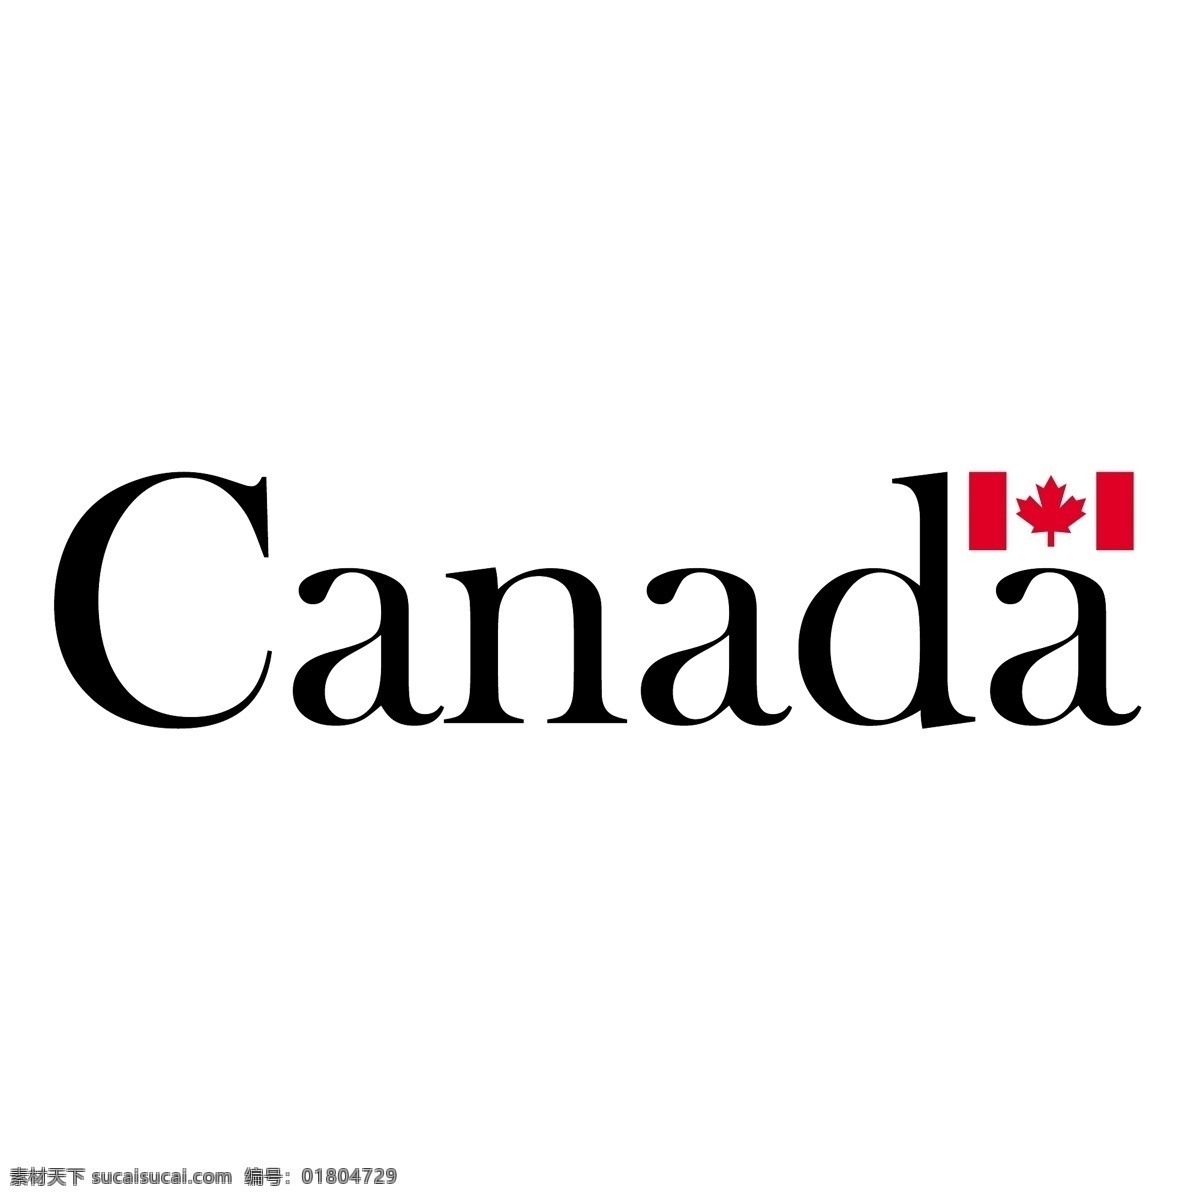 加拿大1 加拿大 加拿大地图 美国国旗 国旗 矢量 艺术 枫叶 载体 加拿大自由 自由 加拿 大叶 向量 加拿大枫叶 加拿大国徽 加拿大的略图 加拿大鹅 在加拿大 轮廓 图维 多利亚